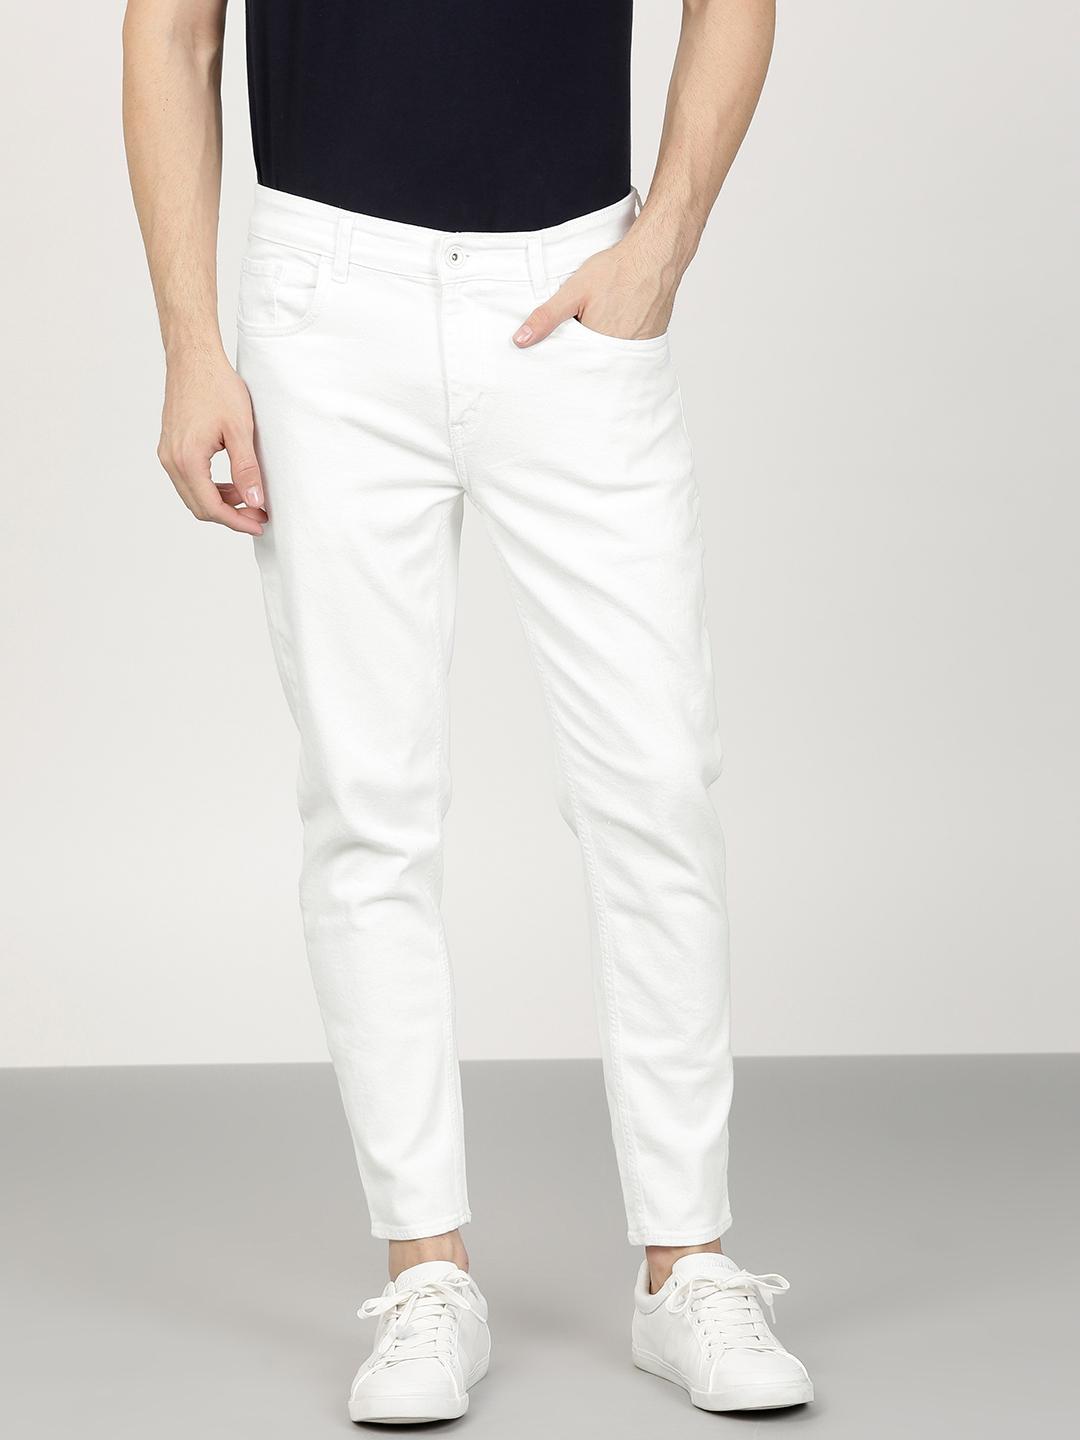 White Denim Jeans For Men: Buy Online 